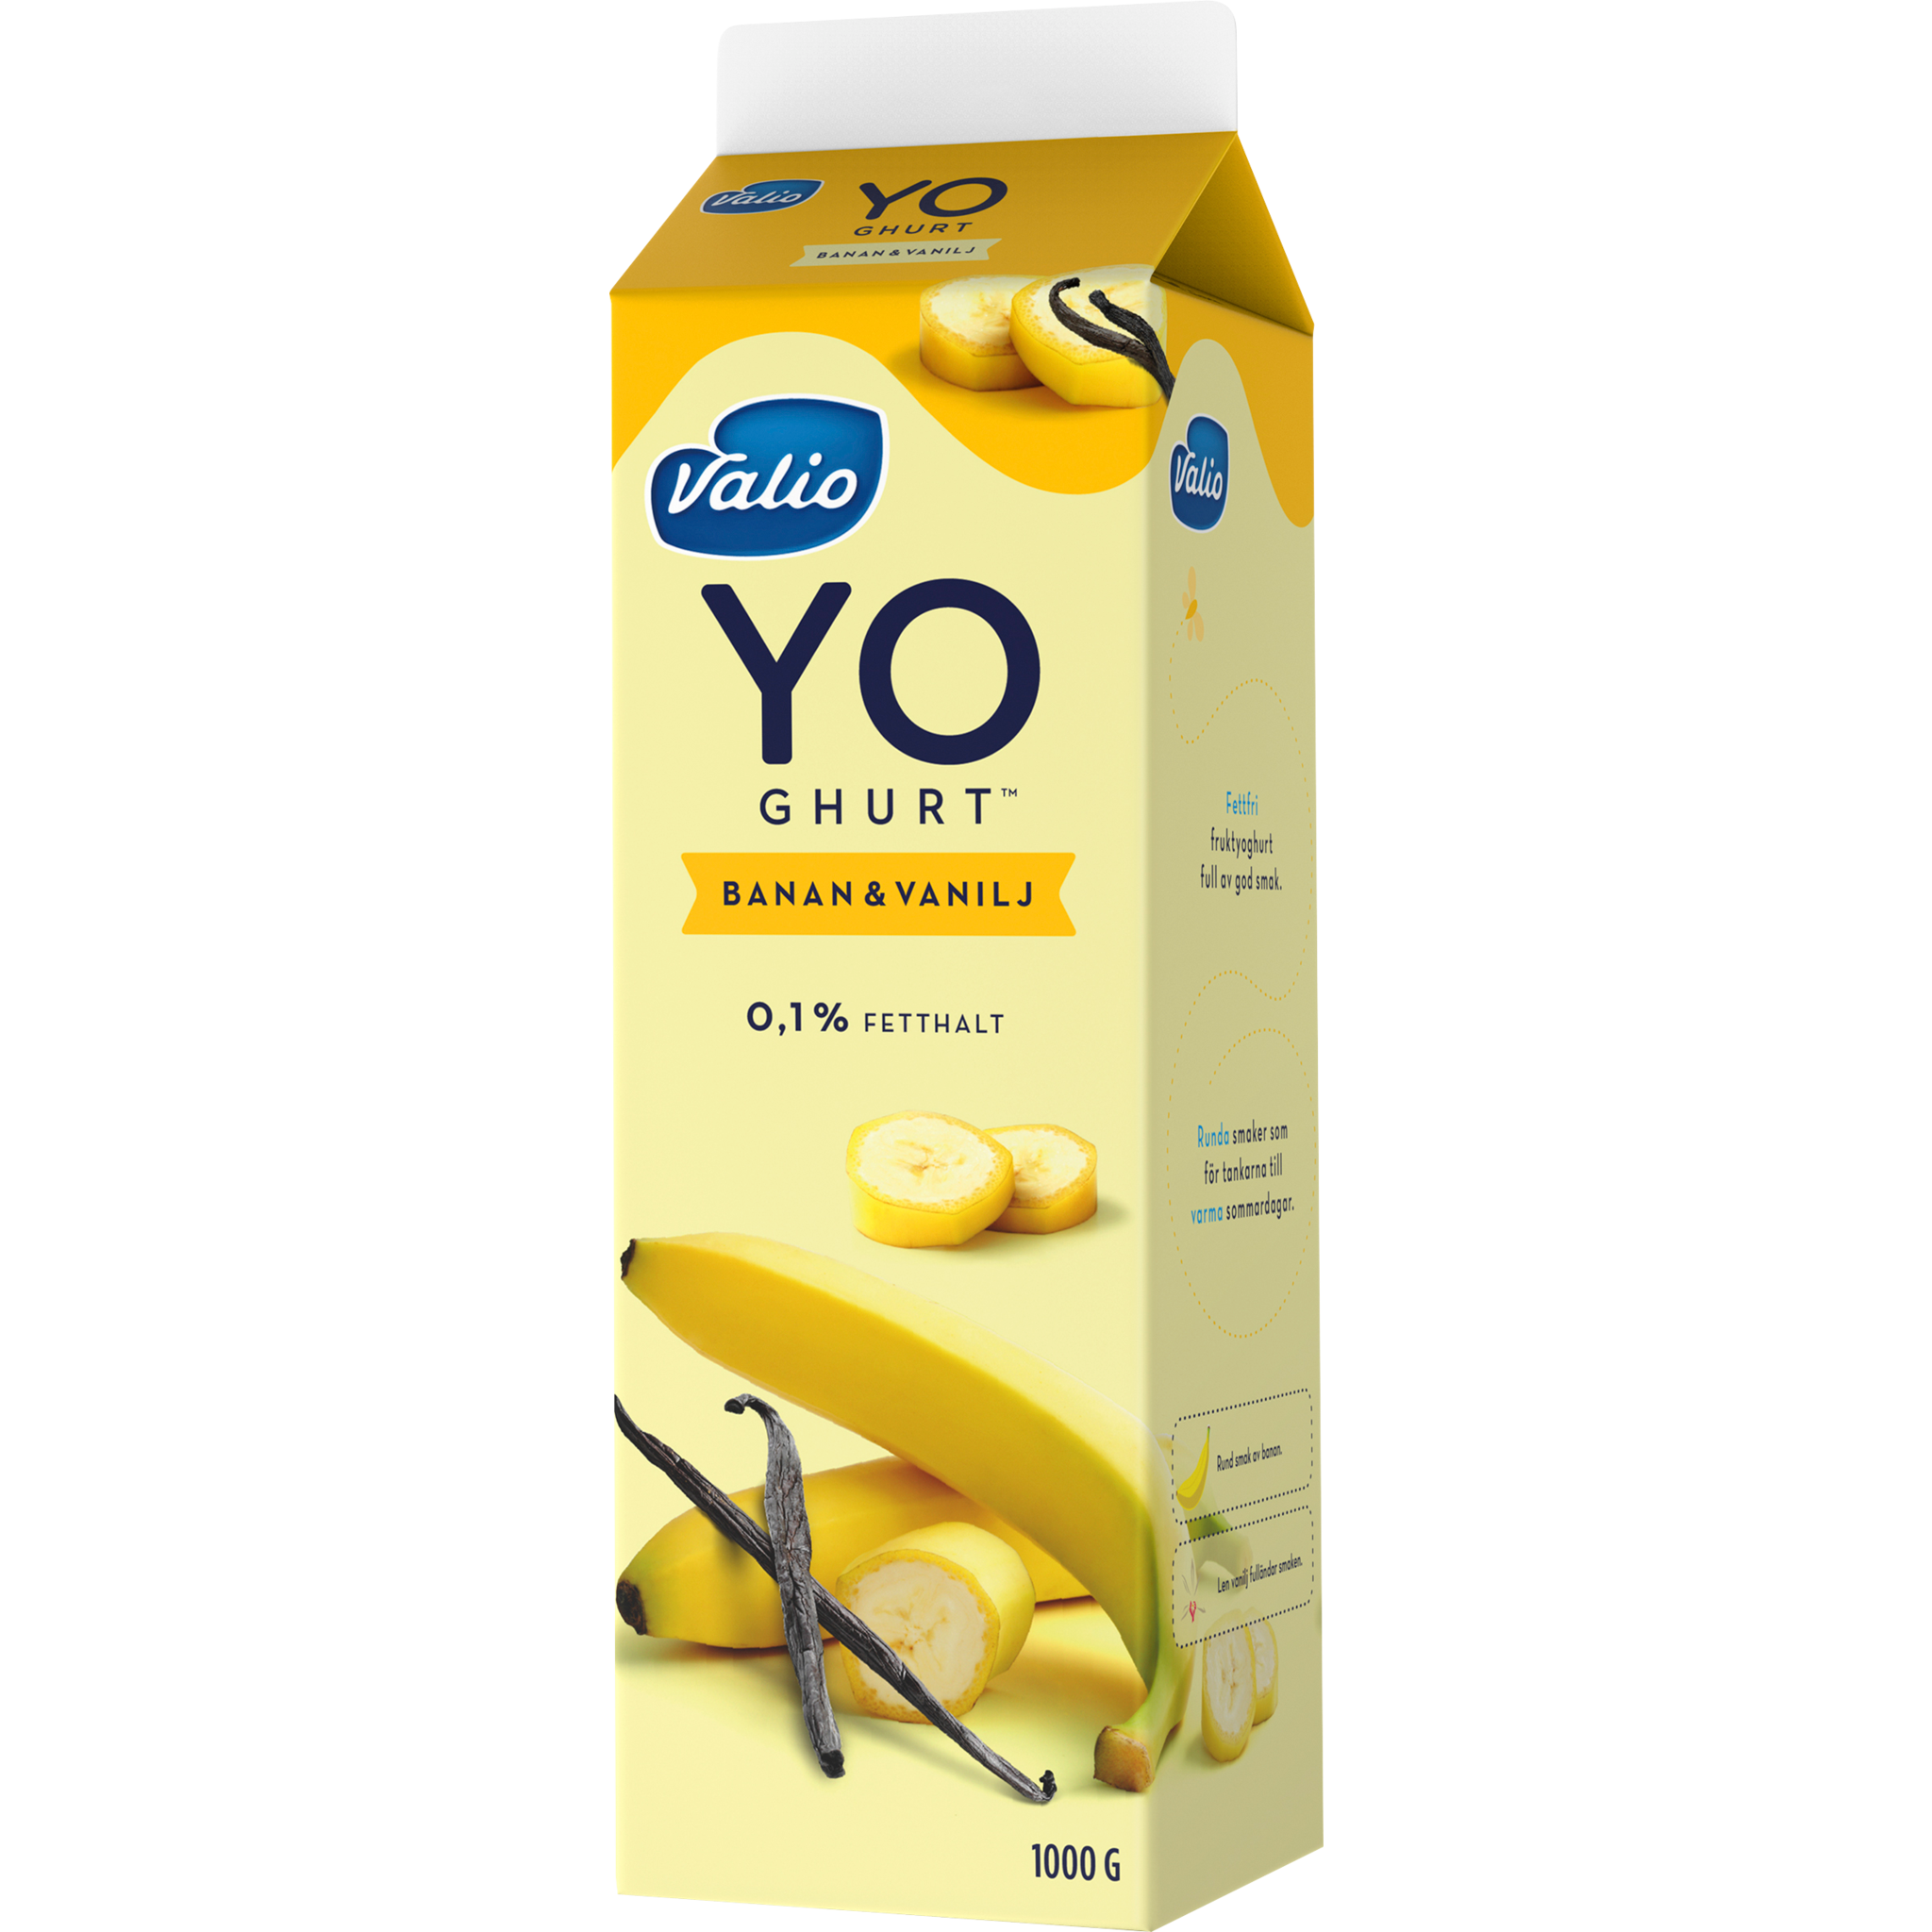 Valio YO-ghurt™ banan & vanilj | Valio